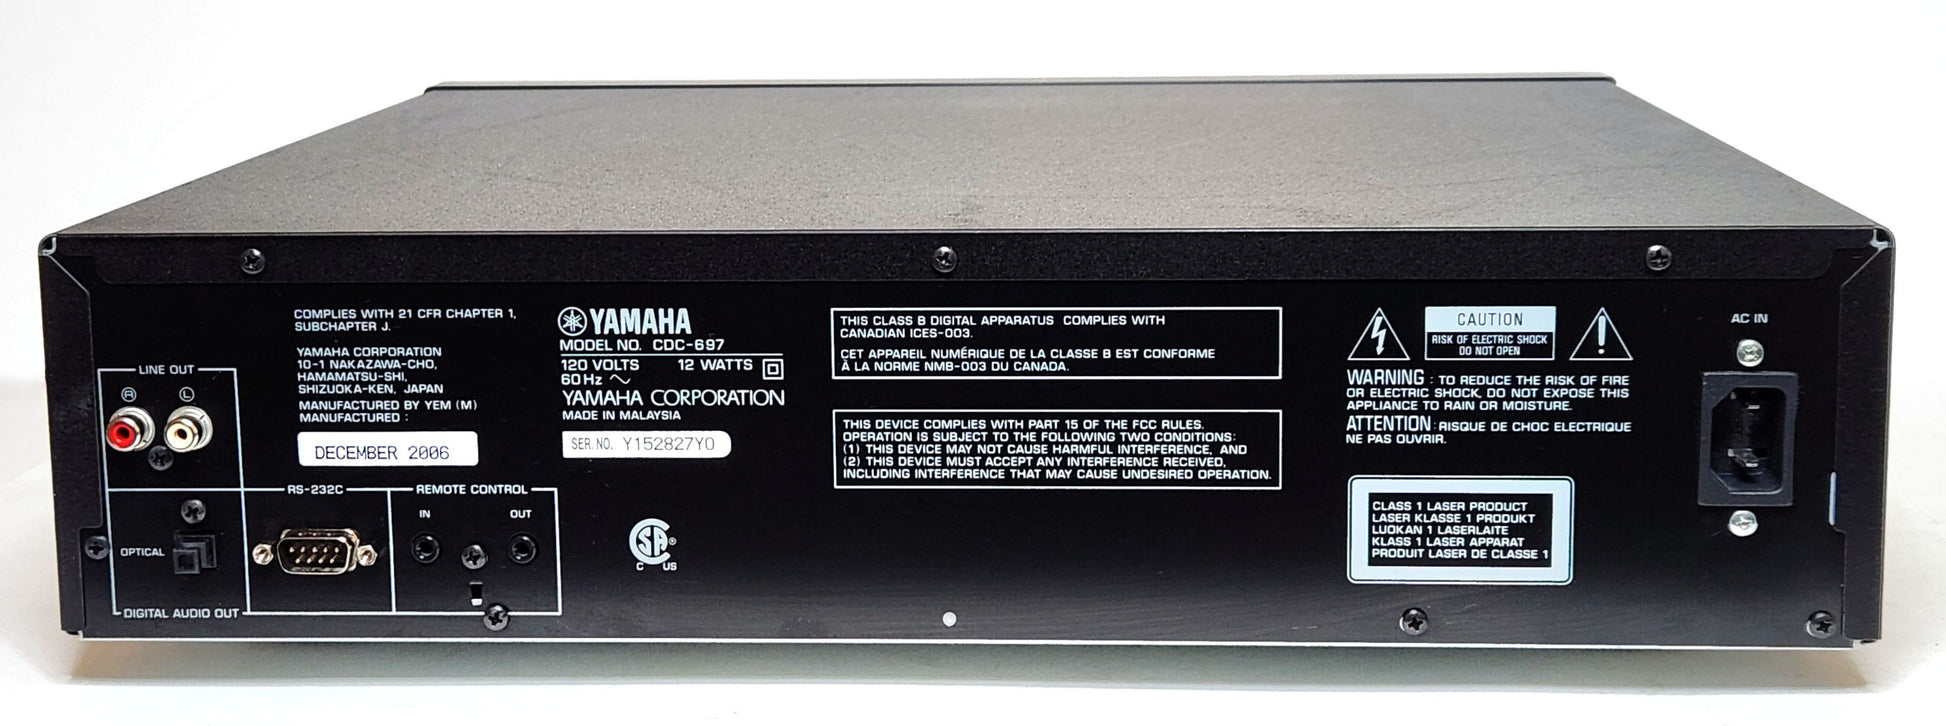 Yamaha CDC-697 5-Disc Carousel CD Changer - Rear